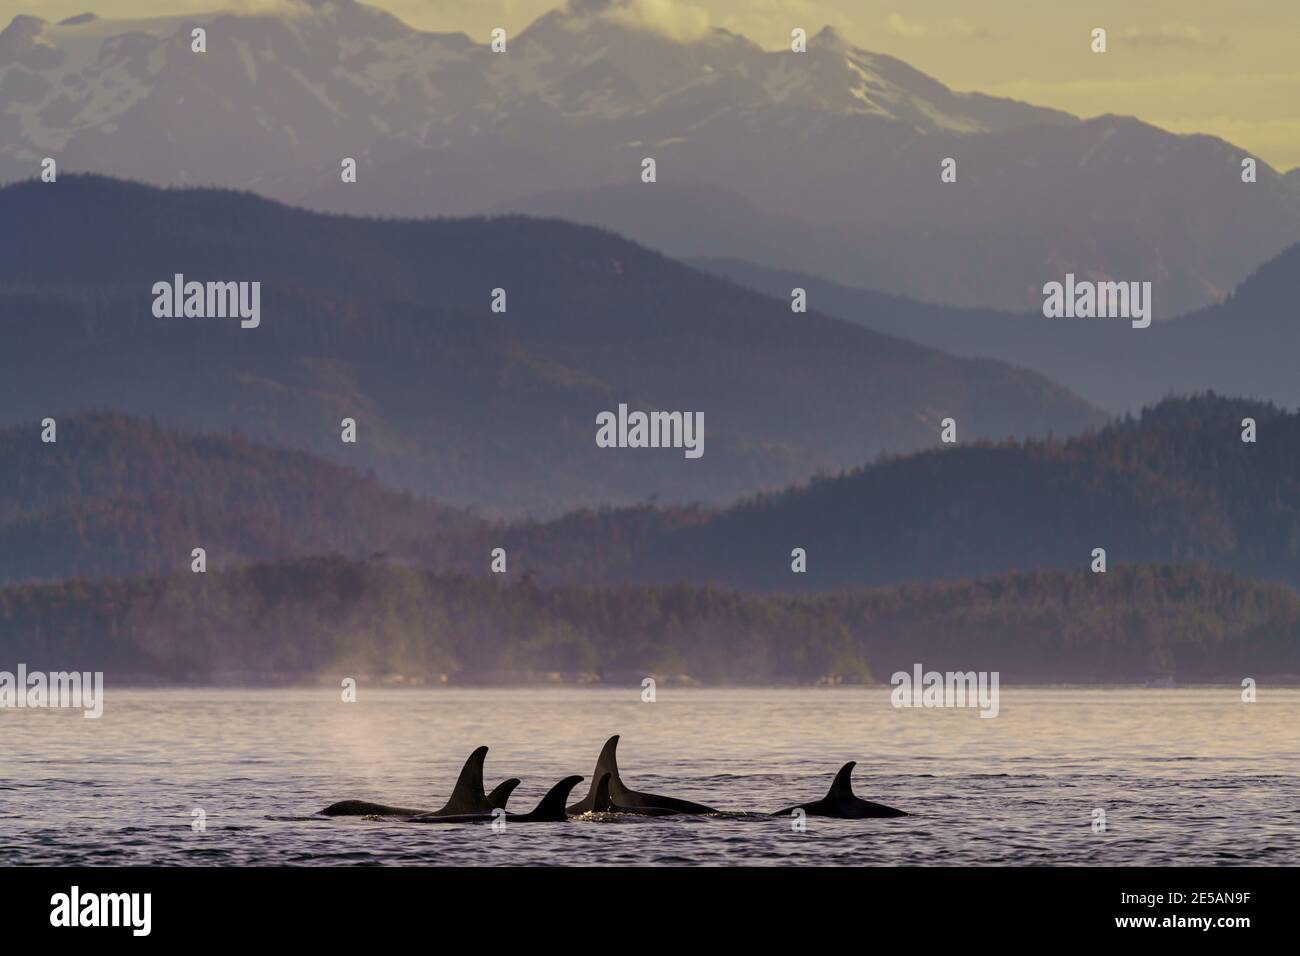 Vaina familiar de orcas residentes del norte a lo largo del archipiélago de Brouighton con las montañas costeras de Columbia Británica en el fondo, First Na Foto de stock